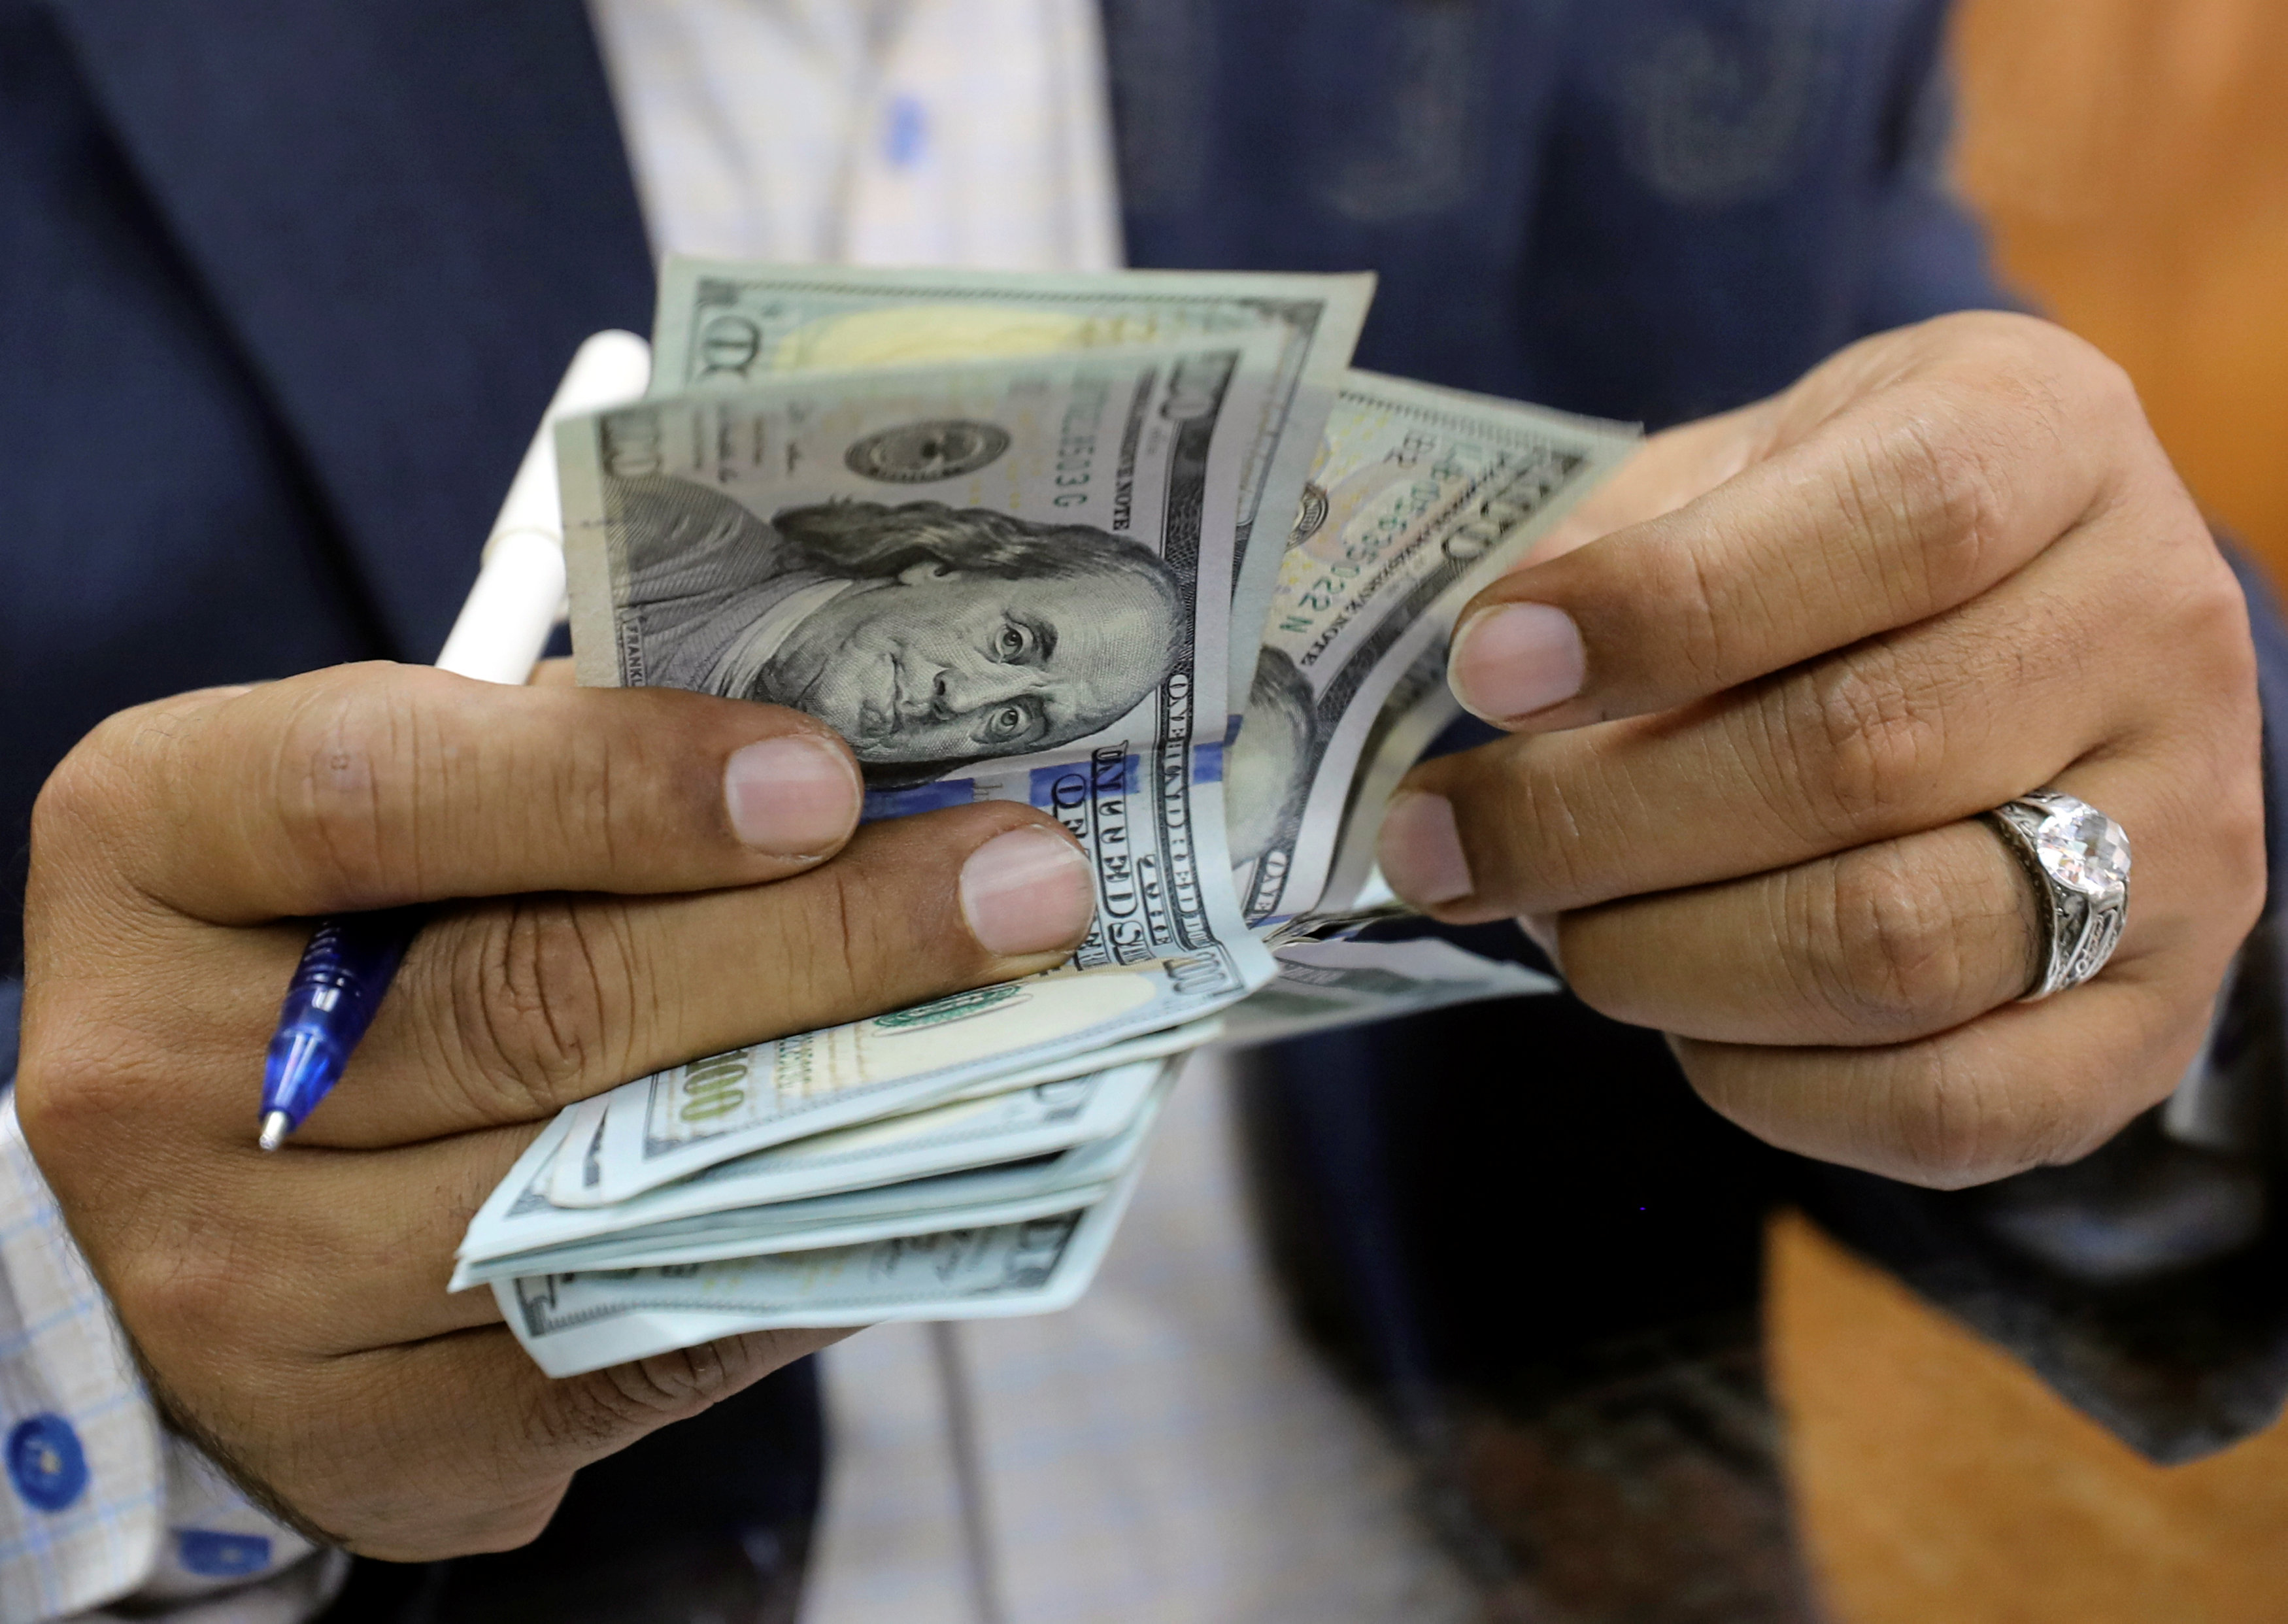 سعر الدولار اليوم الخميس 9 8 2018 فى البنوك المصرية صوت الأمة